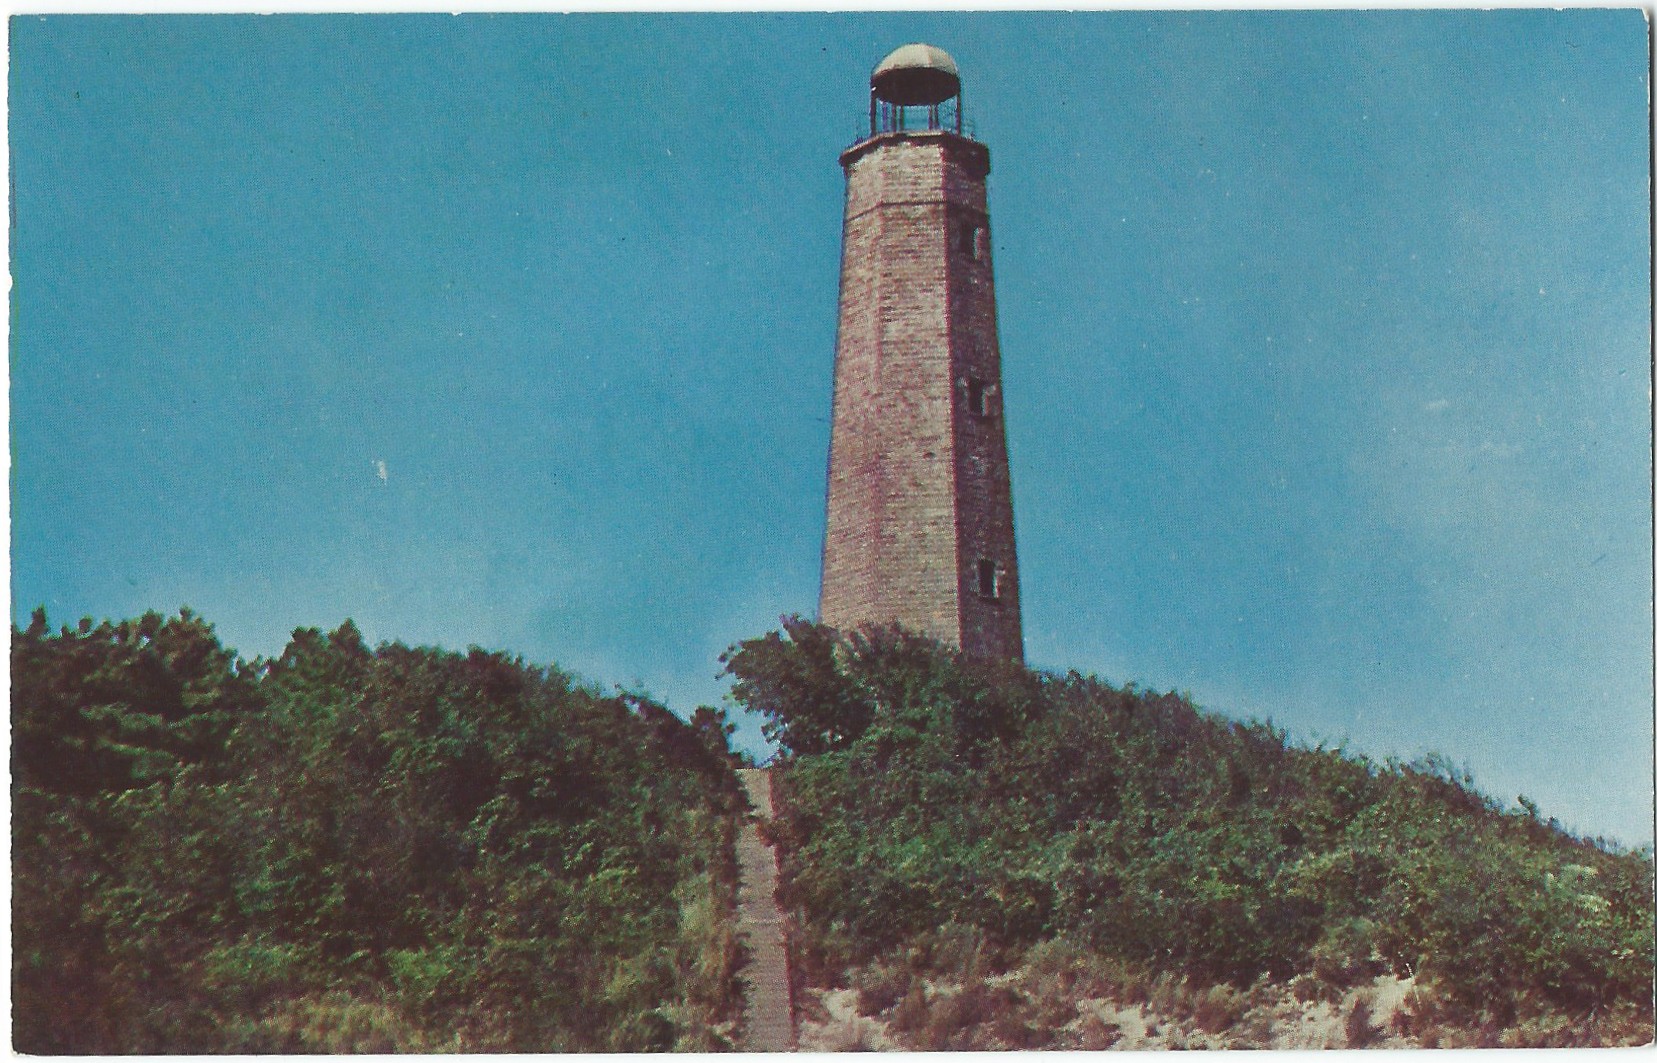 Old Cape Henry Lighthouse Postcard P917 (V A)